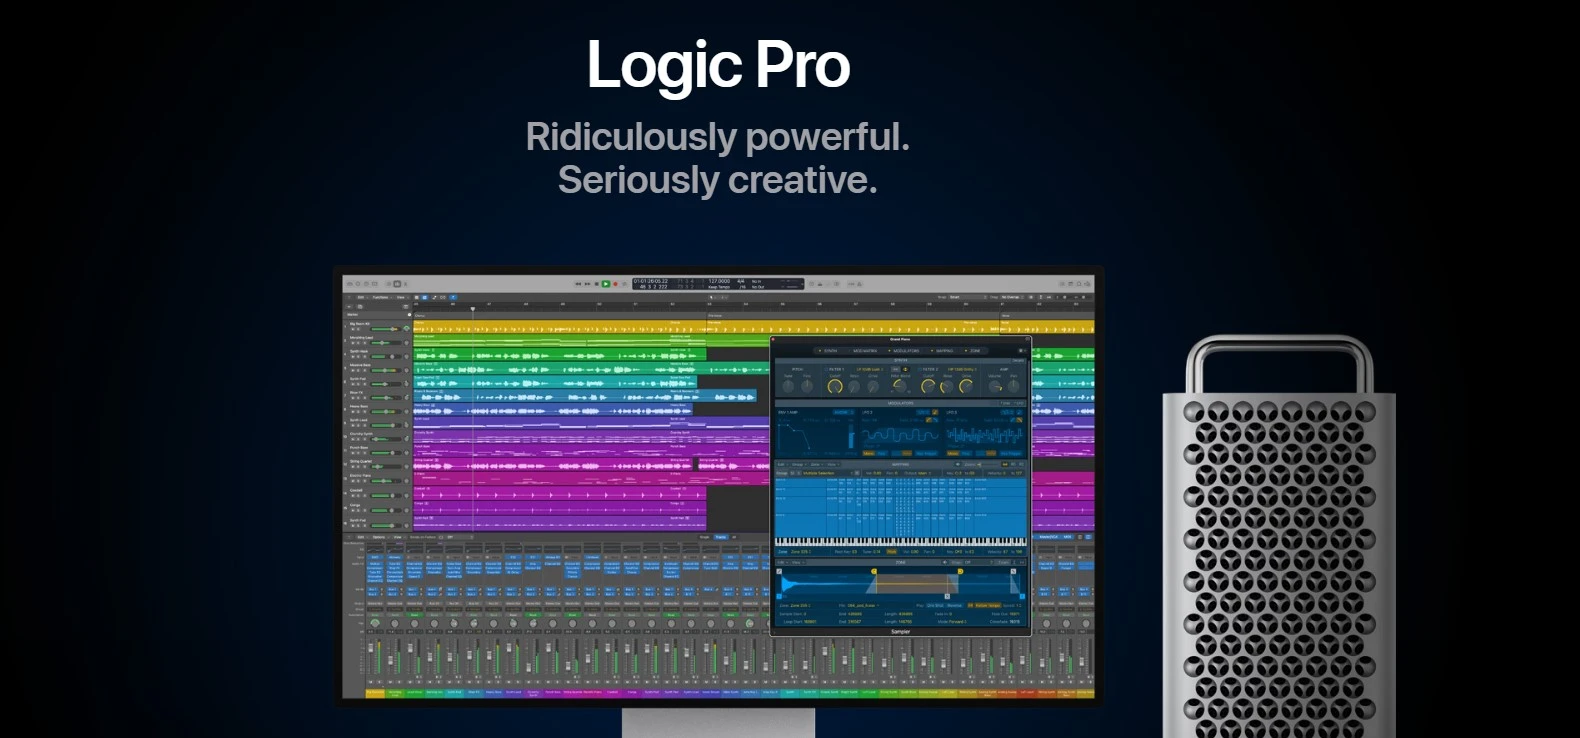 Logic Pro By Apple